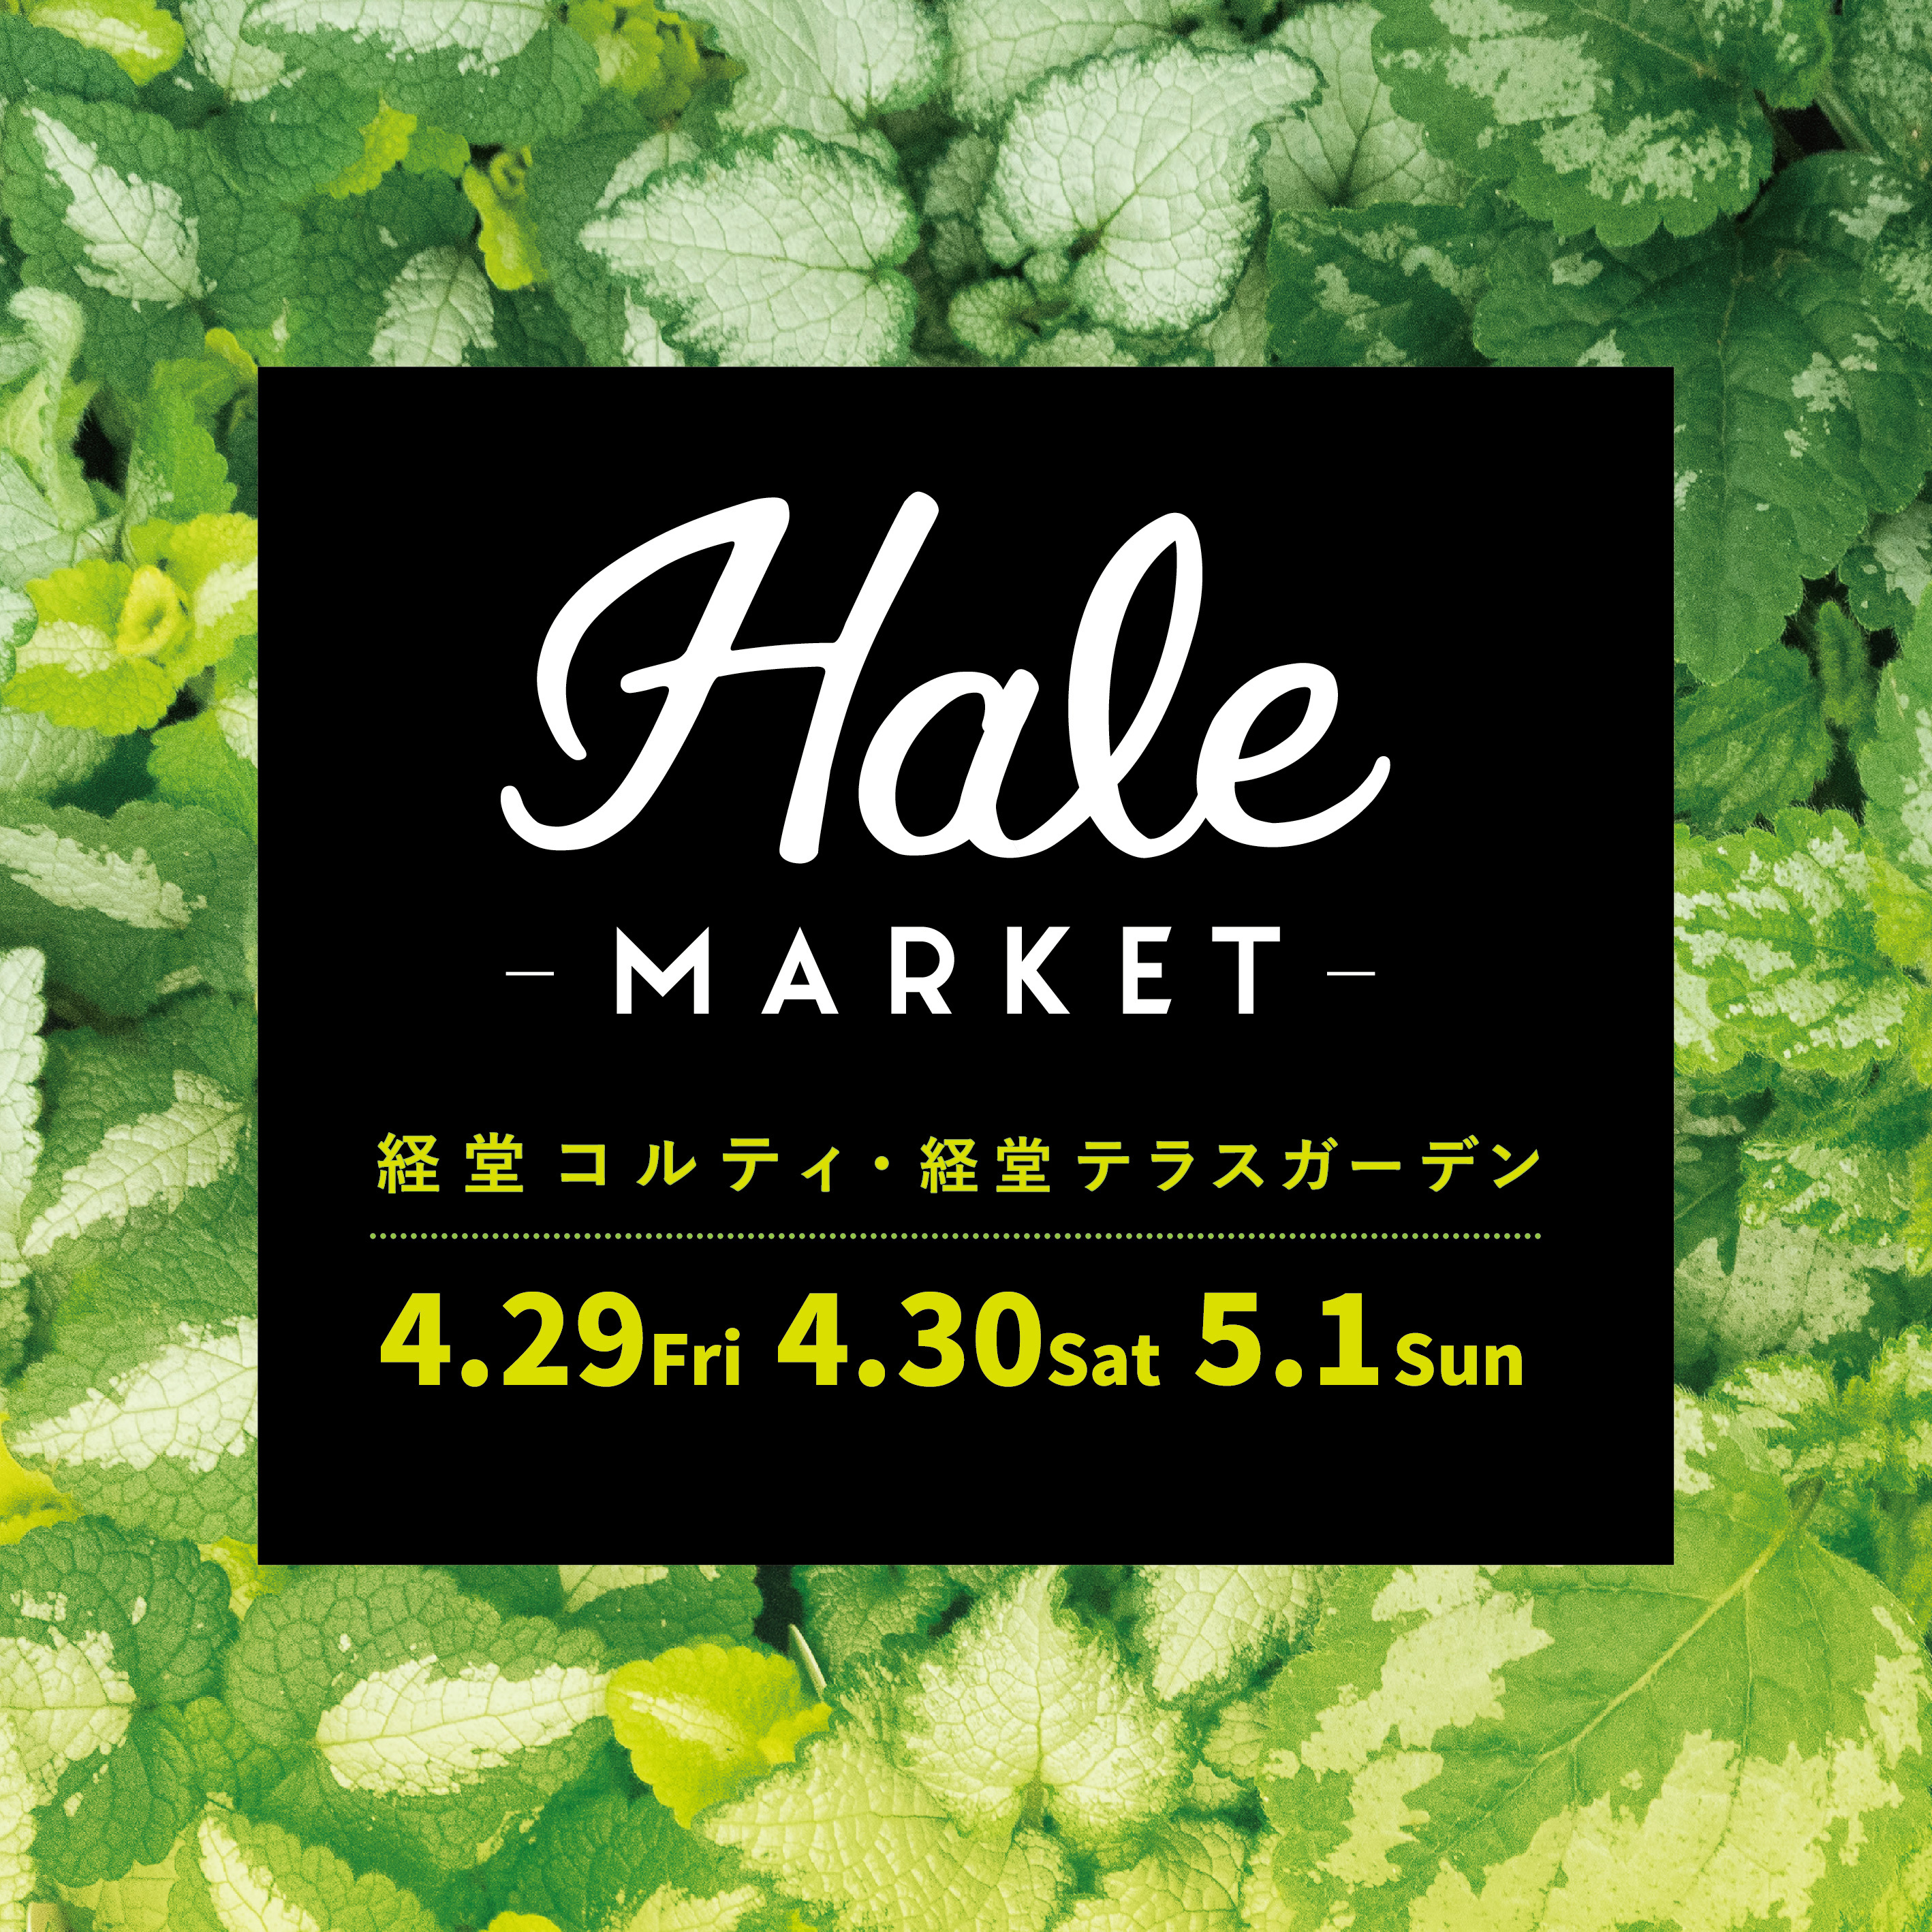 Hale Market